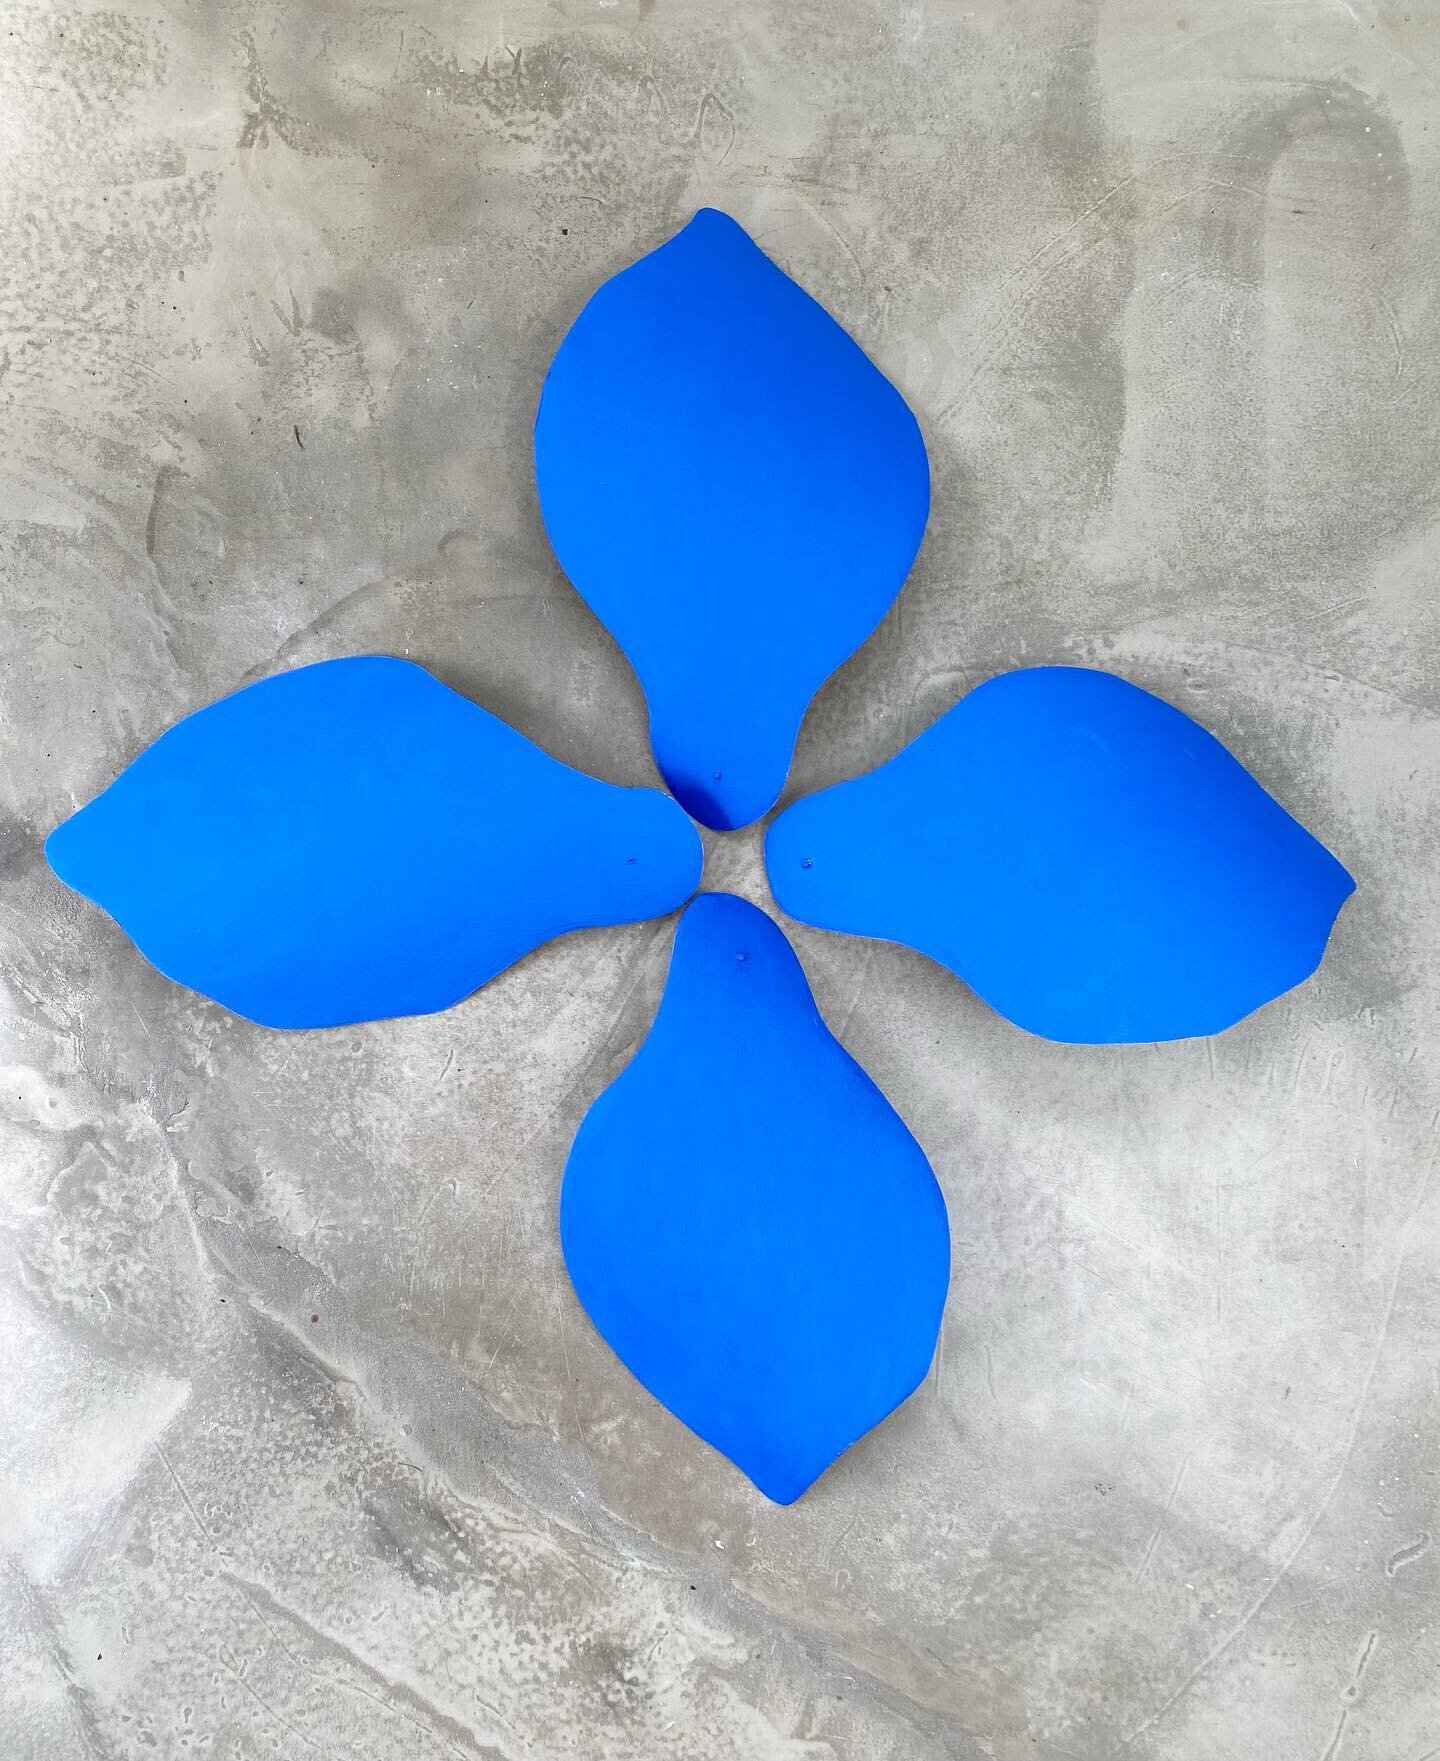 New petals- in Cobalt blue.
Working me curves.
💙
#handmadelighting 
#sculpturallighting 
#cobalt